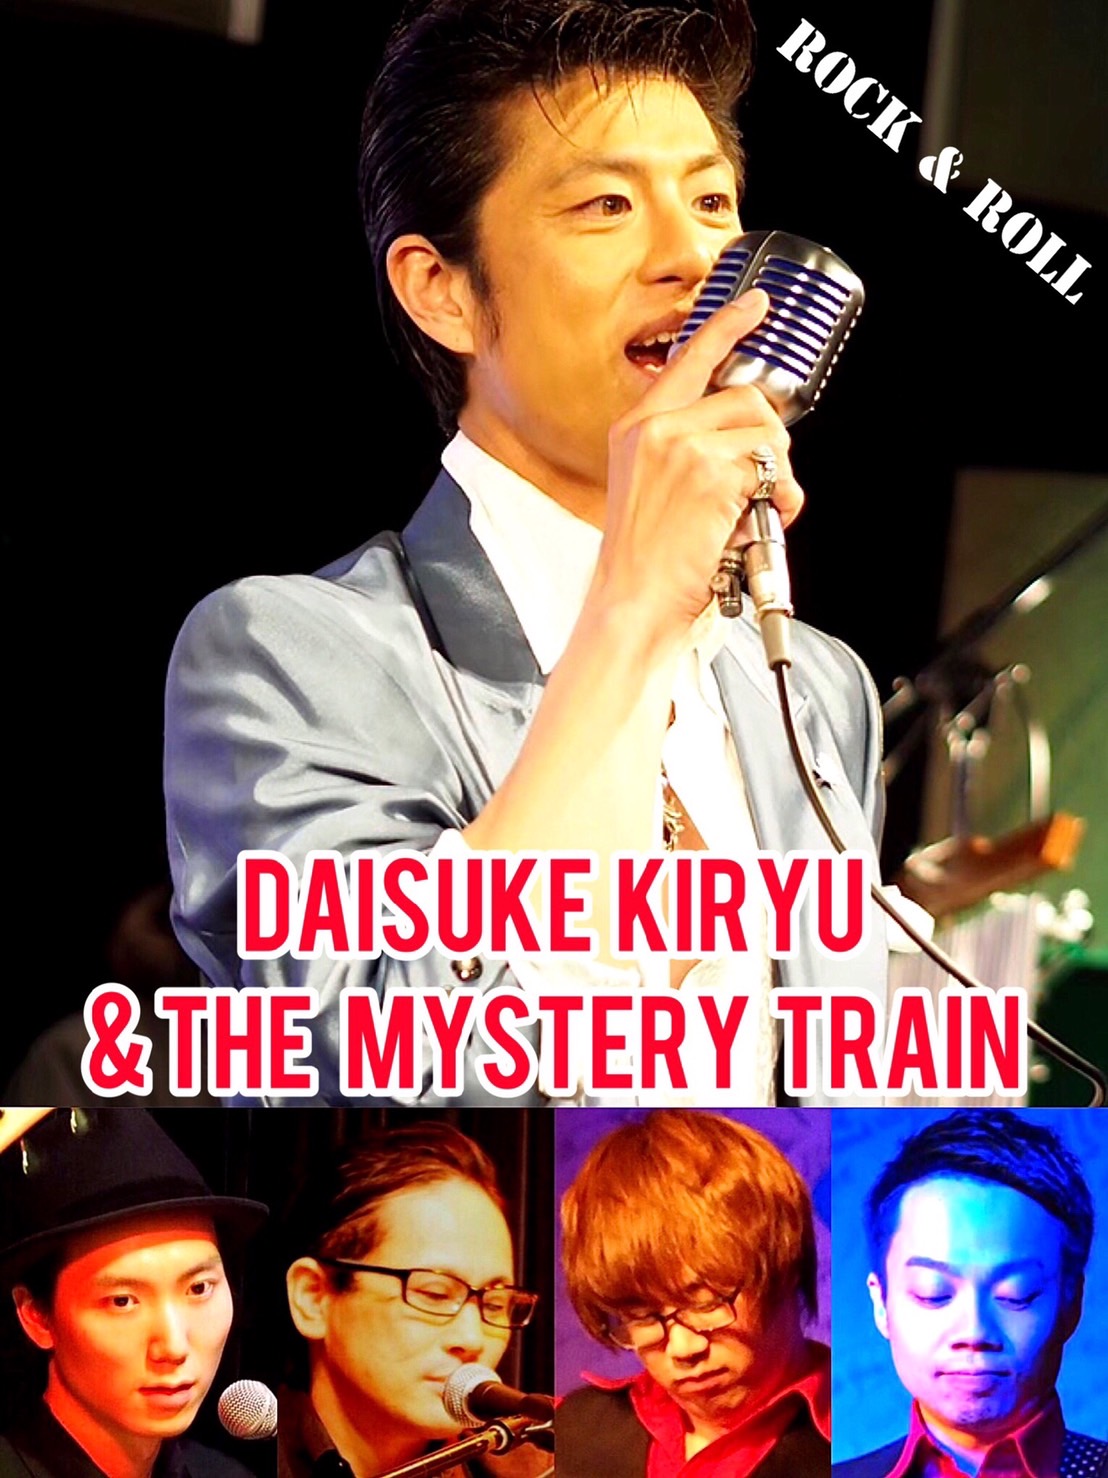 【配信】桐生大輔&The Mystery train 『オールディーズナイト』